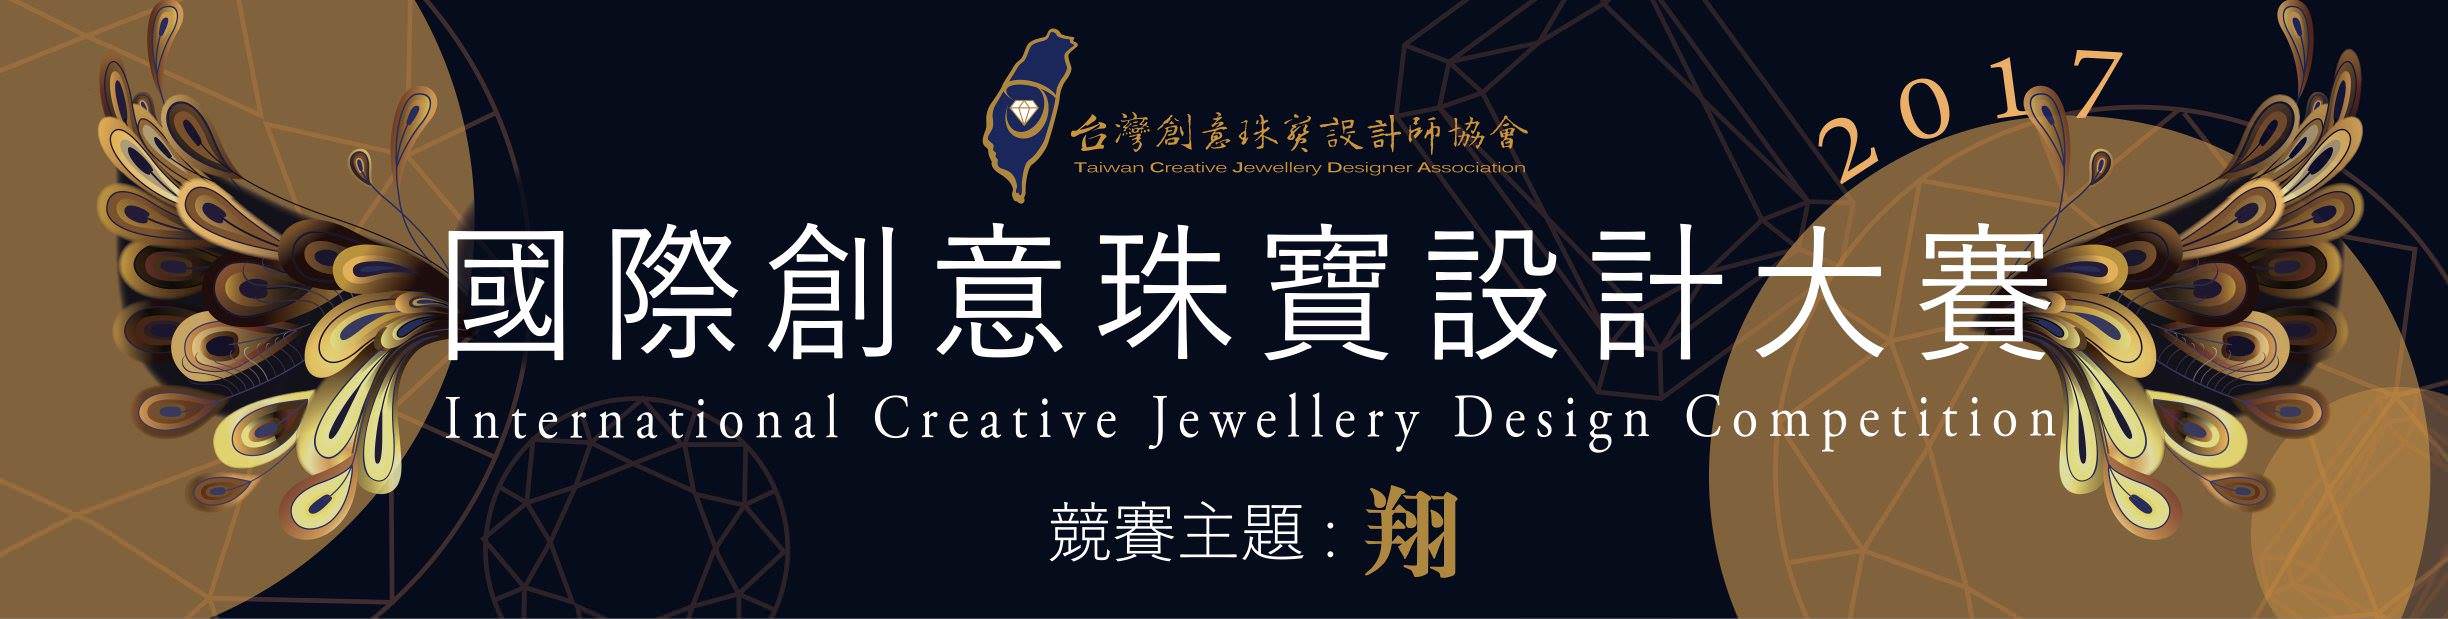 「2017國際創意珠寶設計大賽」  比賽資訊